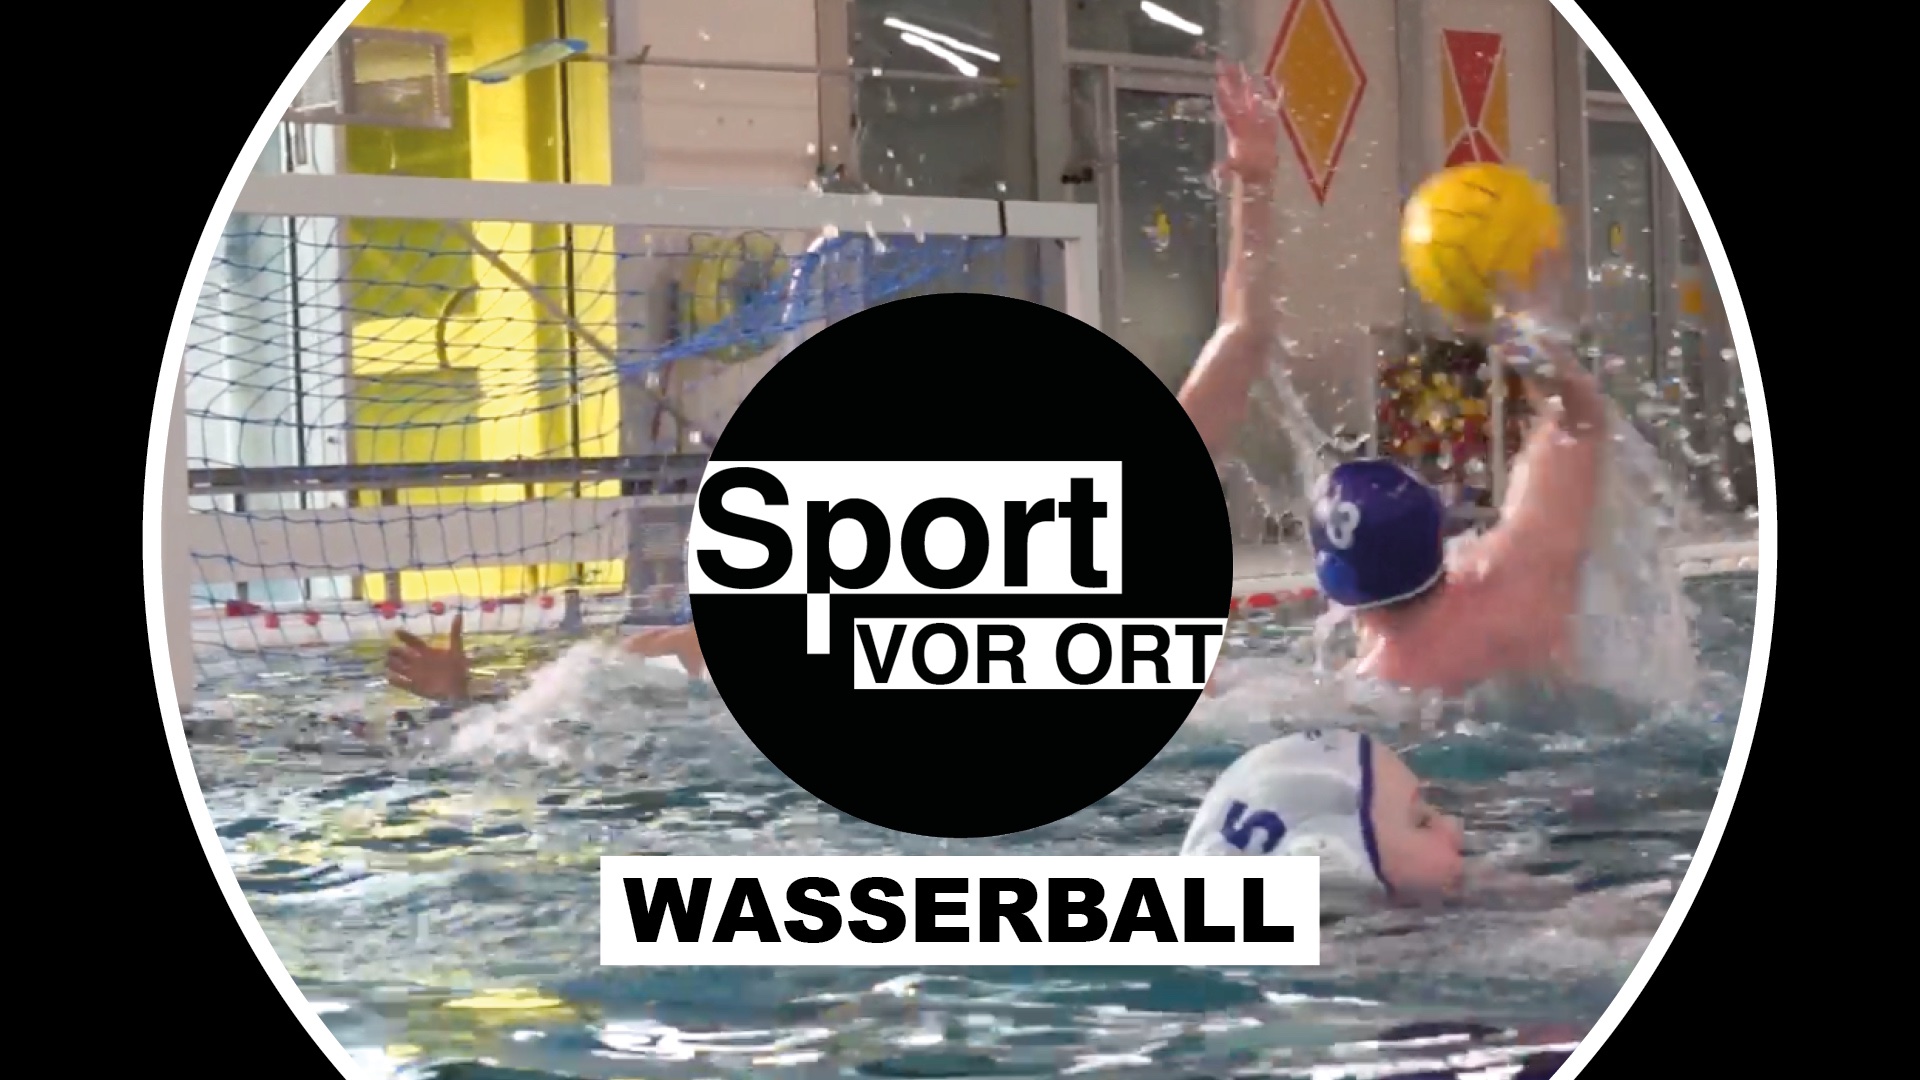 Sport vor Ort - Wasserball